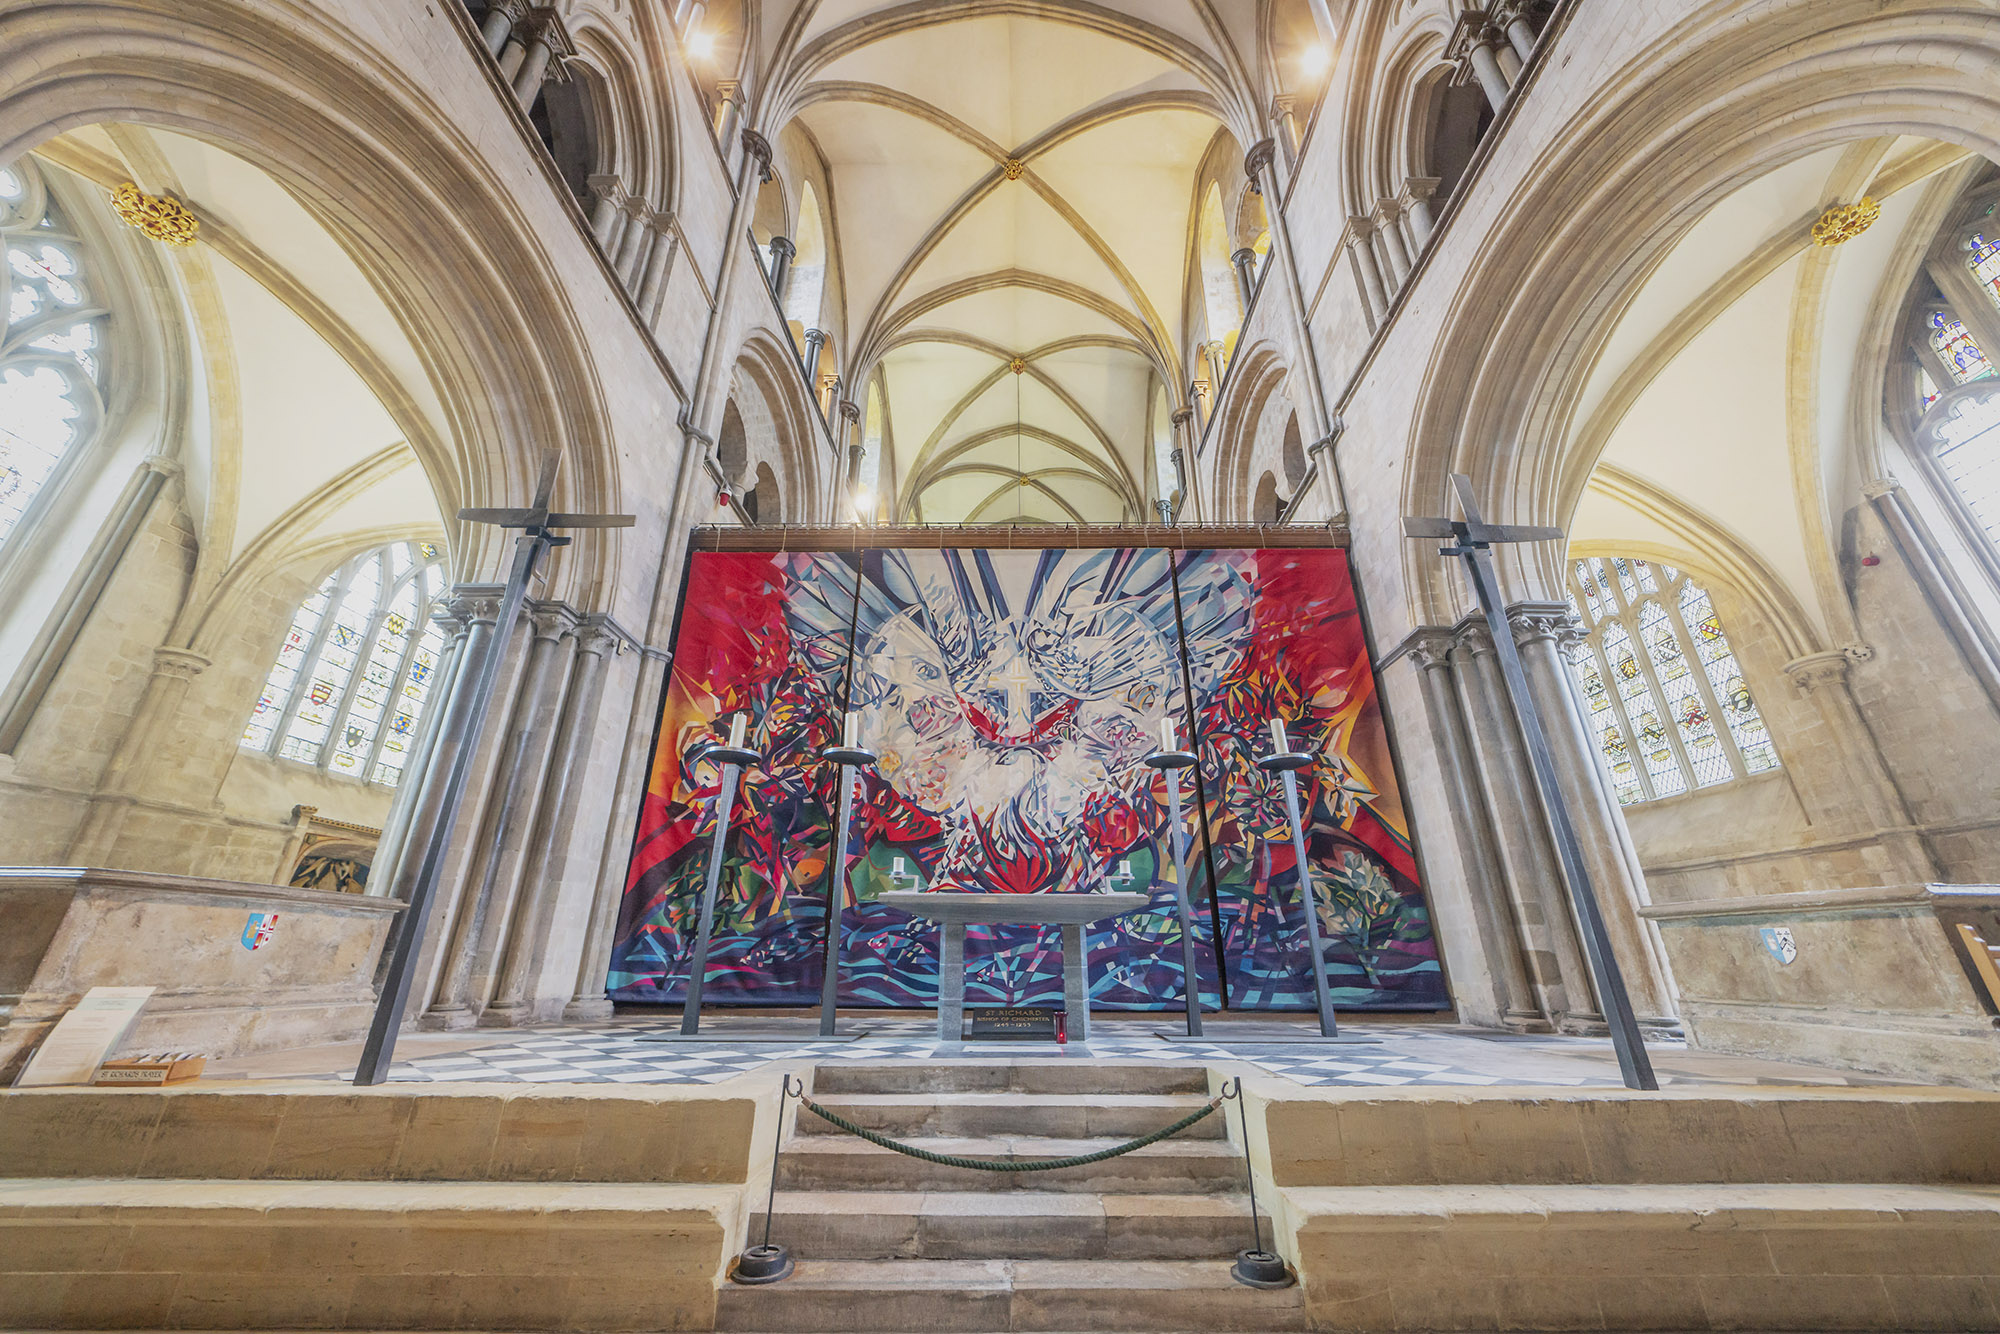 The Shrine of Saint Richard with the Benker-Schirmer Tapestry